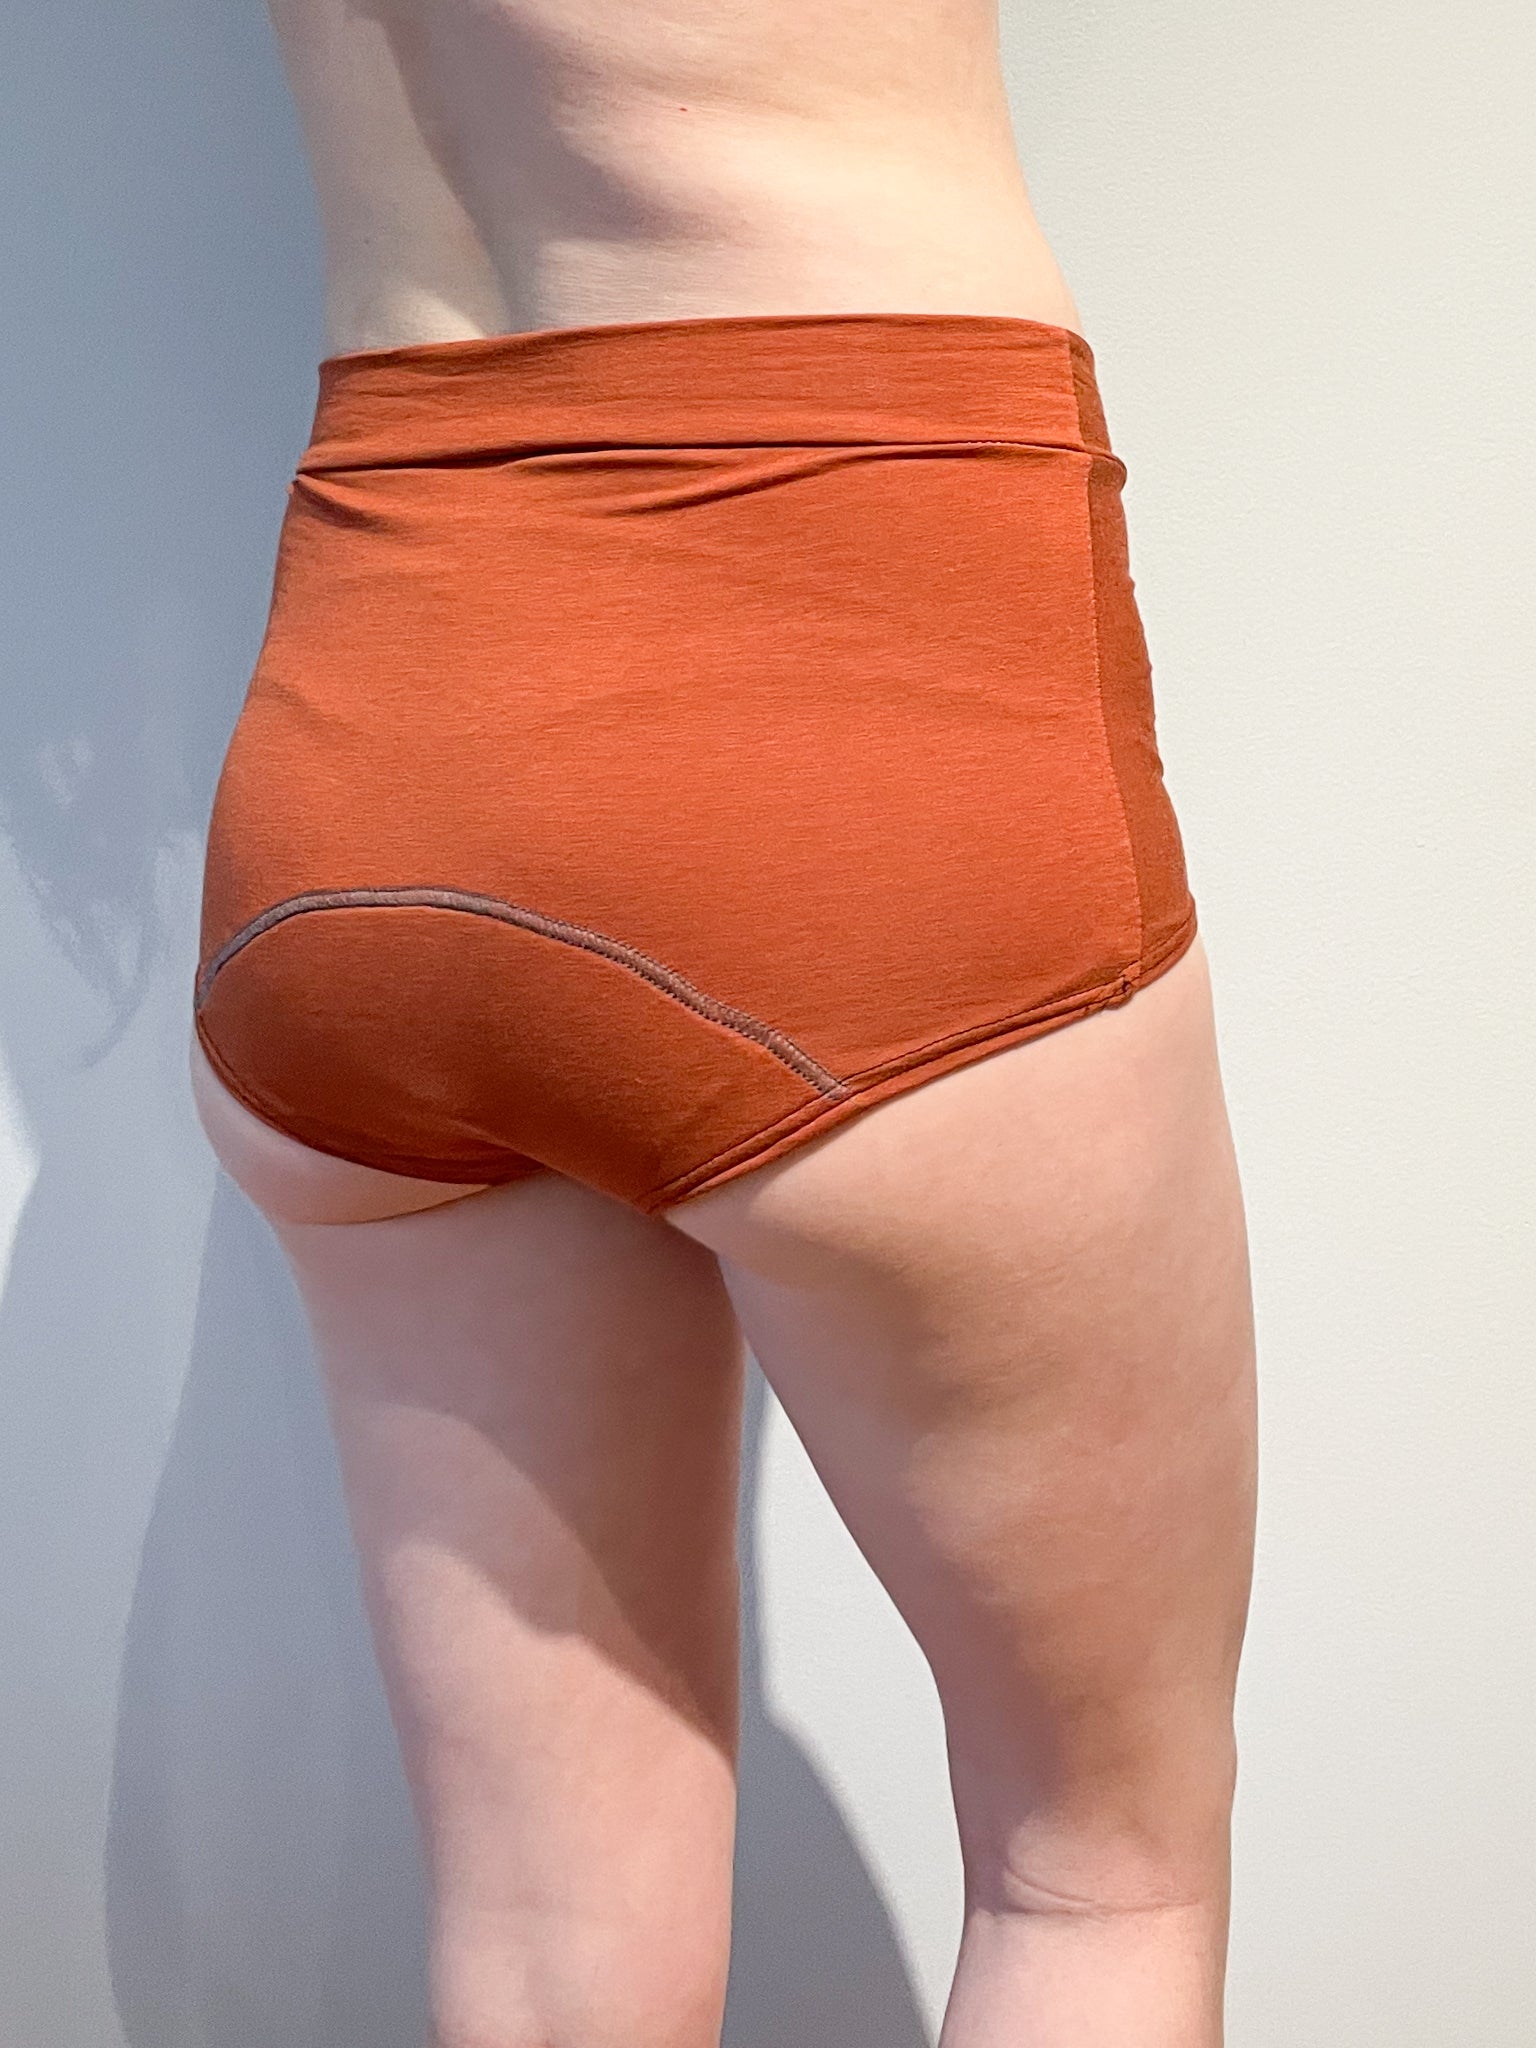 Bamboo Fiber Seamless Menstrual Low Waist Panty 4 Layers, Reusable